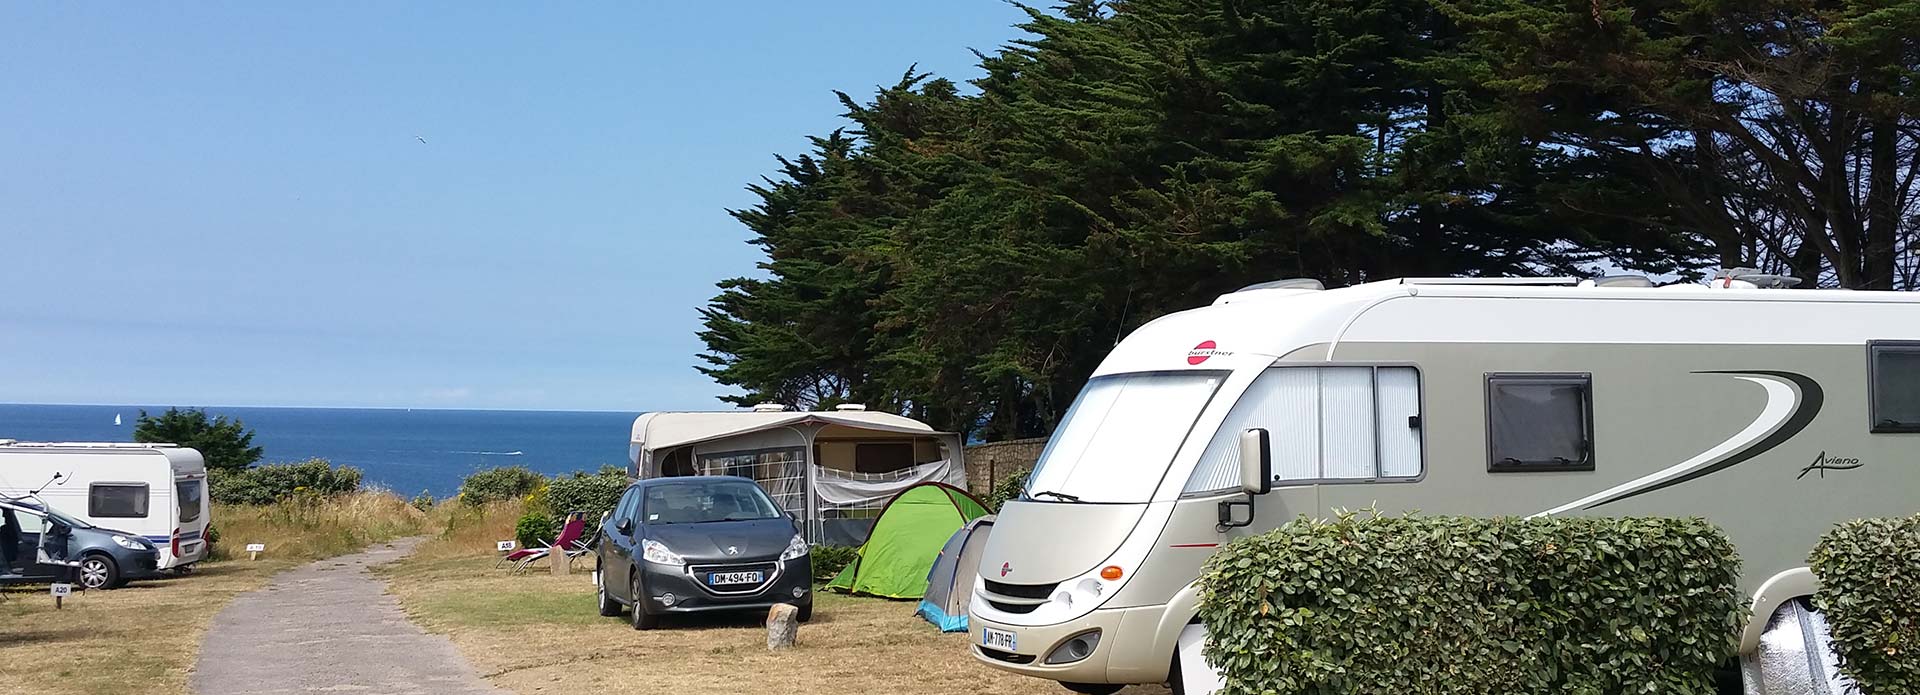 camping a seulement quelques pas de la plage